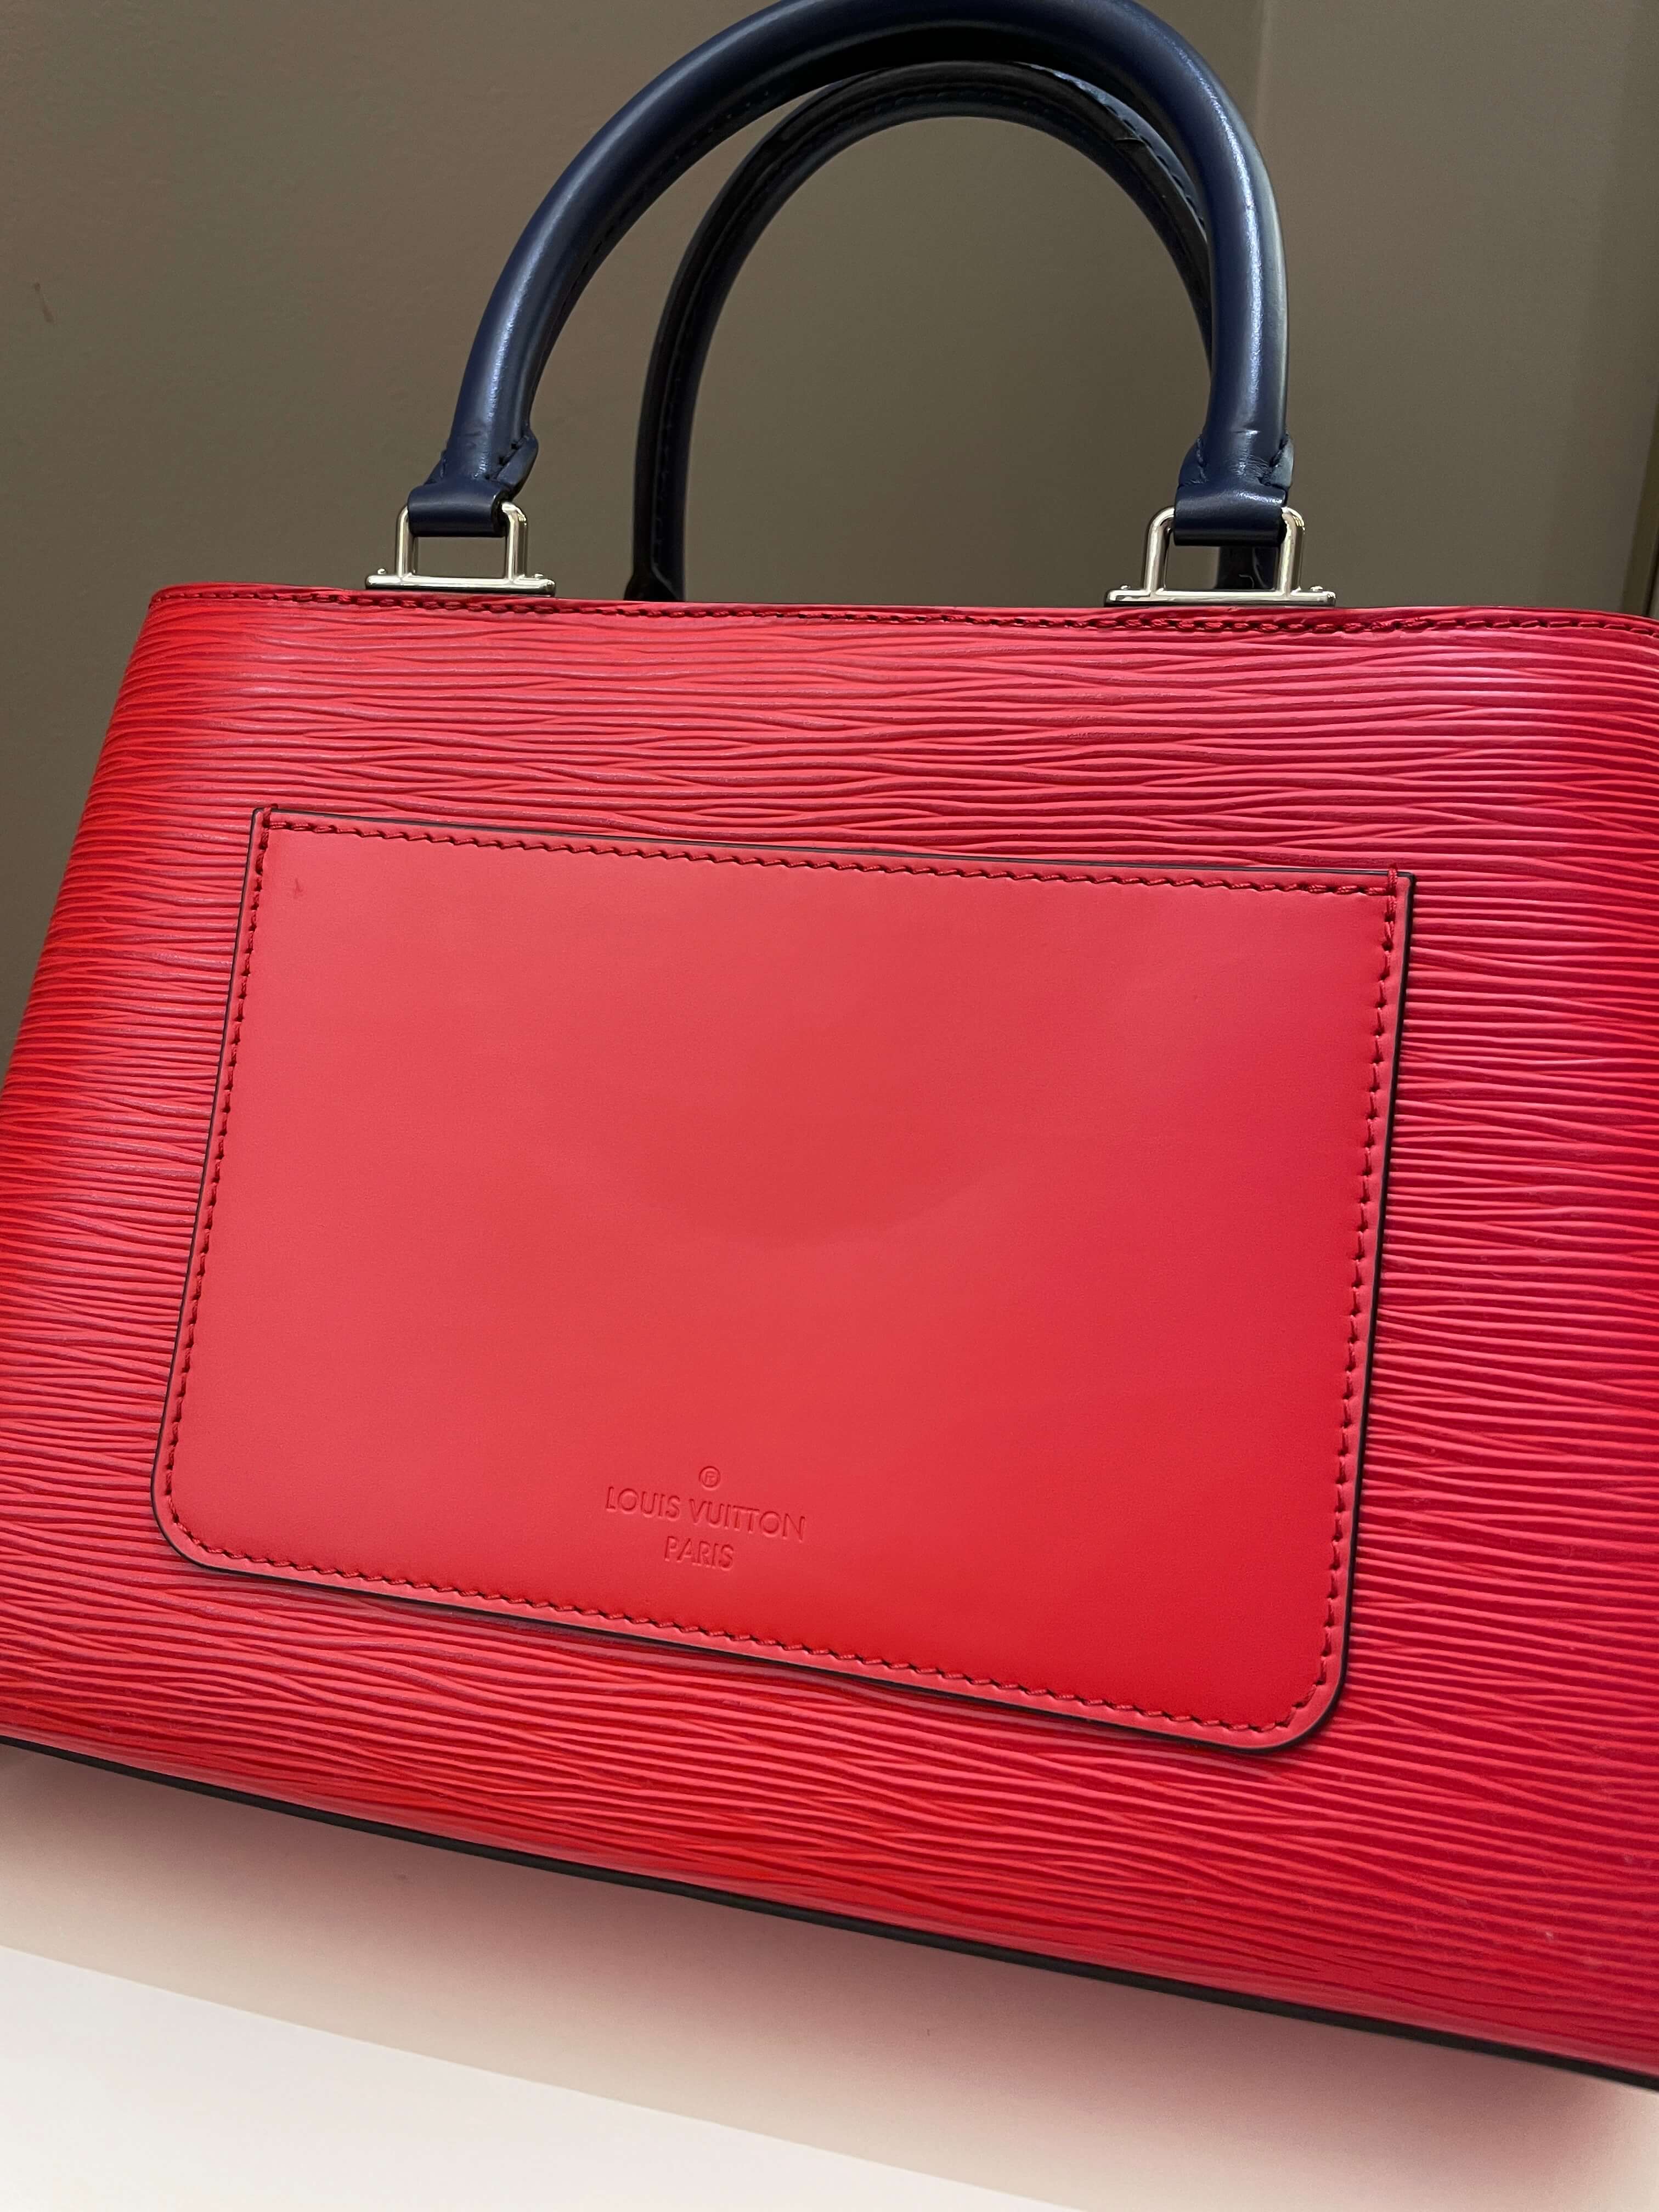 Louis Vuitton Kleber Mm Handbag Overview